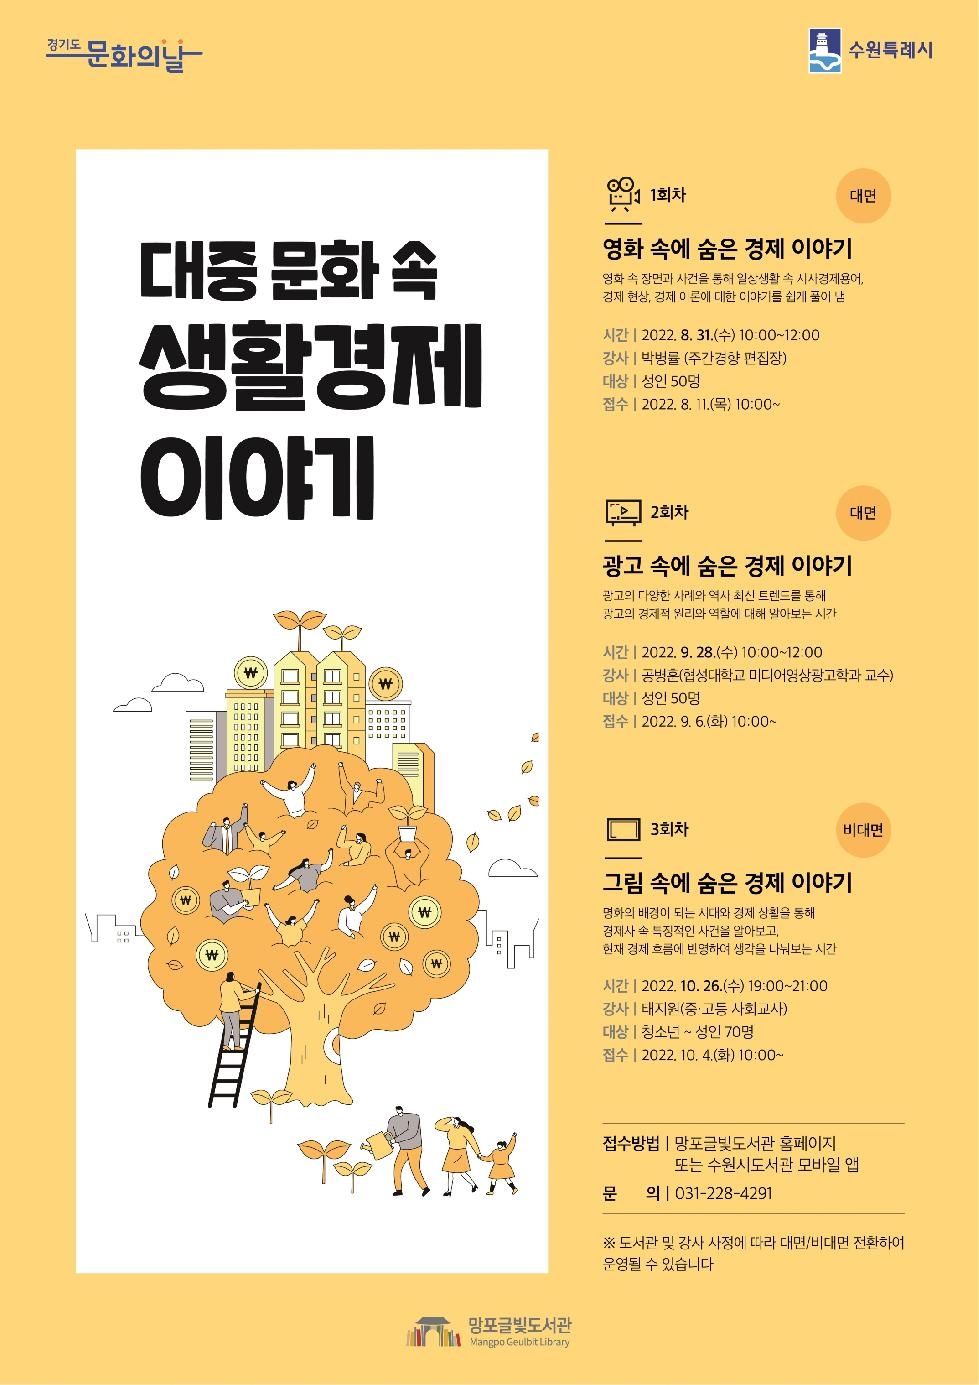 수원시 망포글빛도서관, ‘그림 속에 숨은 경제 이야기’강좌 개최